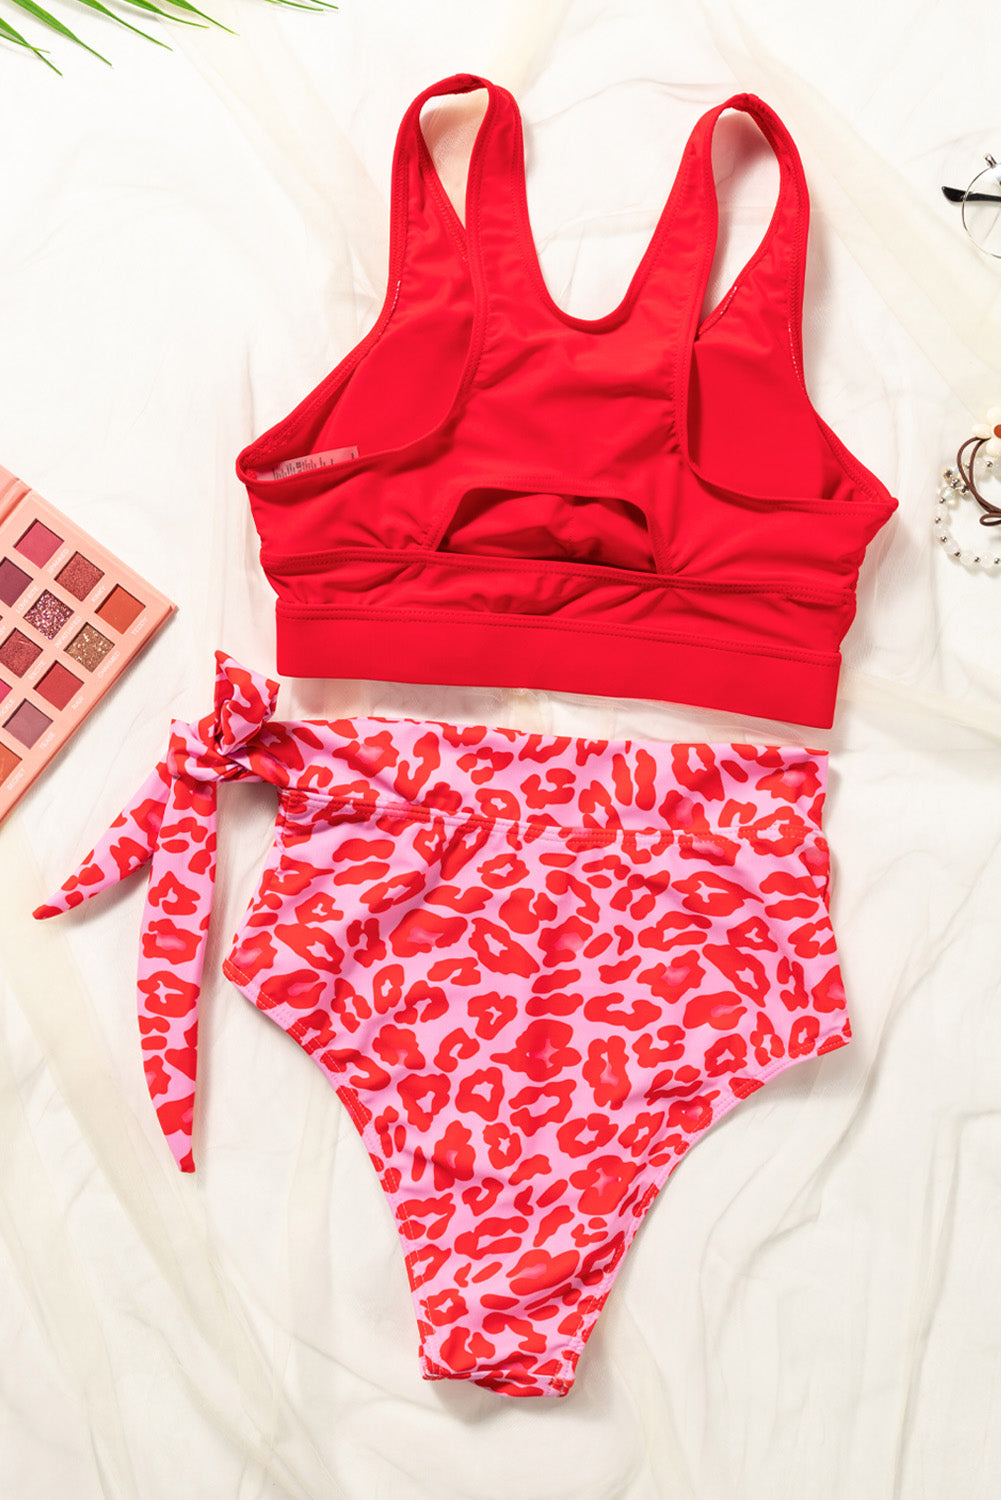 Feuriges rotes, himmelblaues, floral bedrucktes Bikini-Set mit hoher Taille und Schnürung